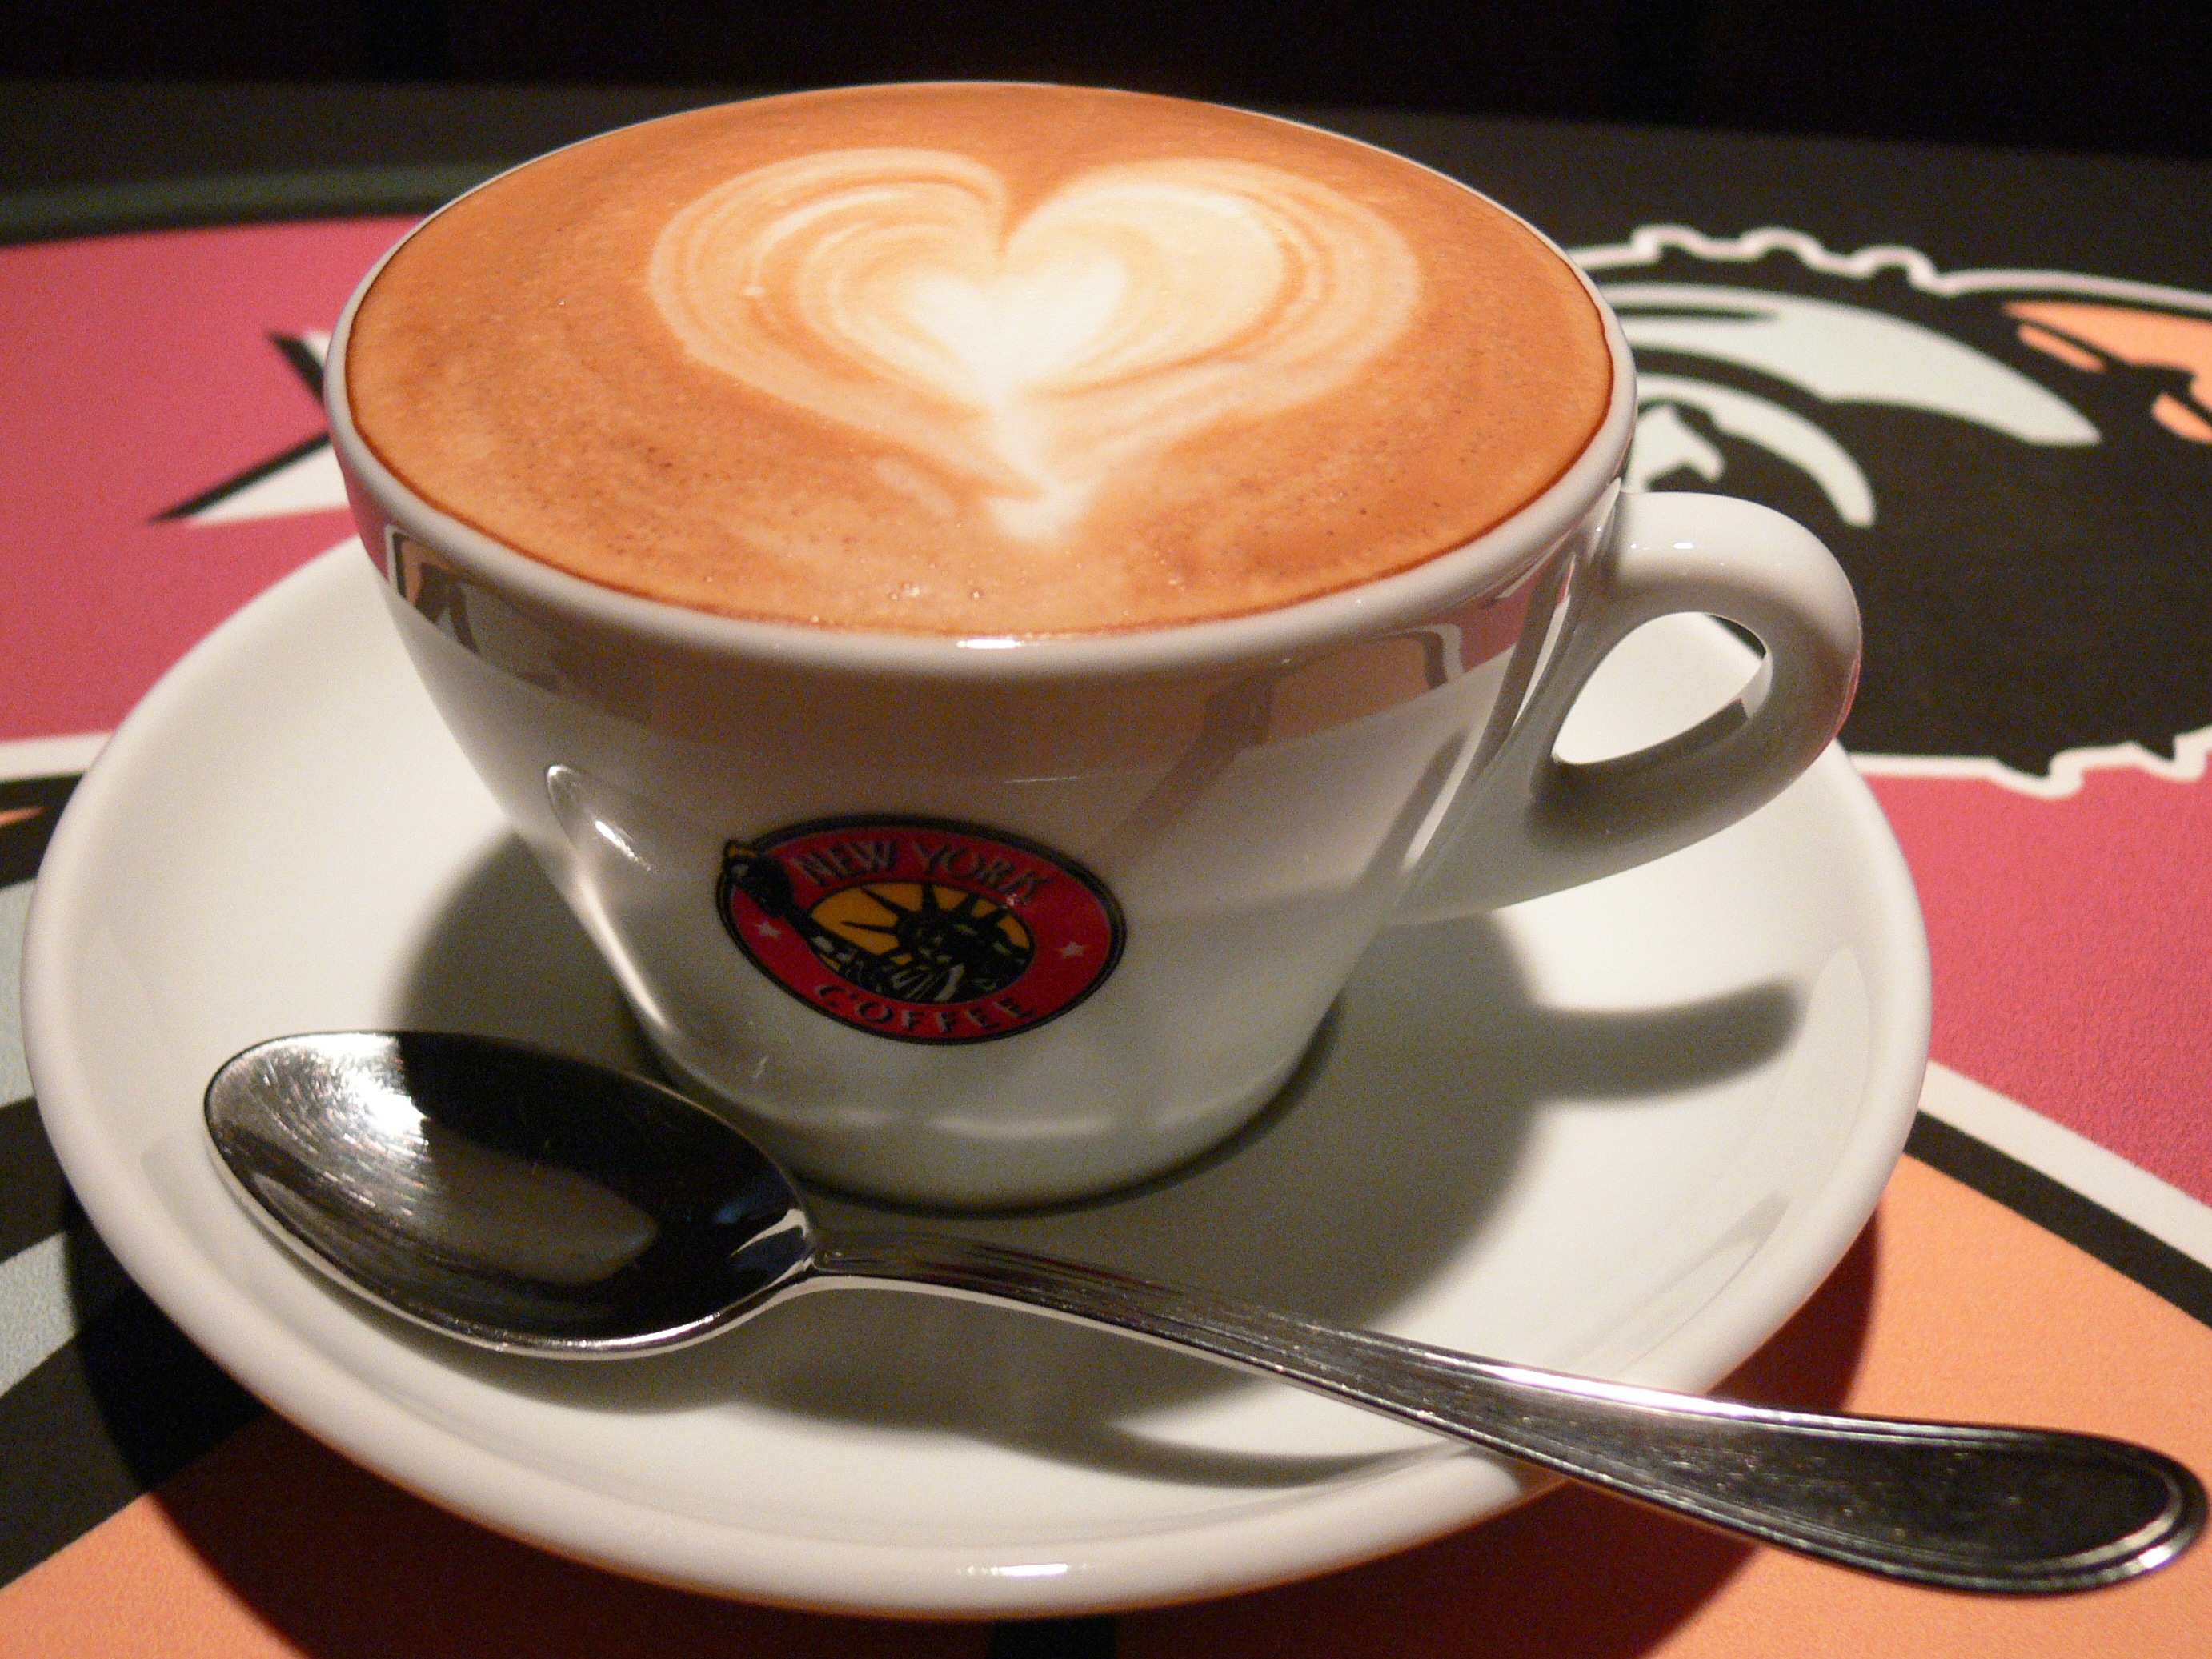 caffeine is found in coffee